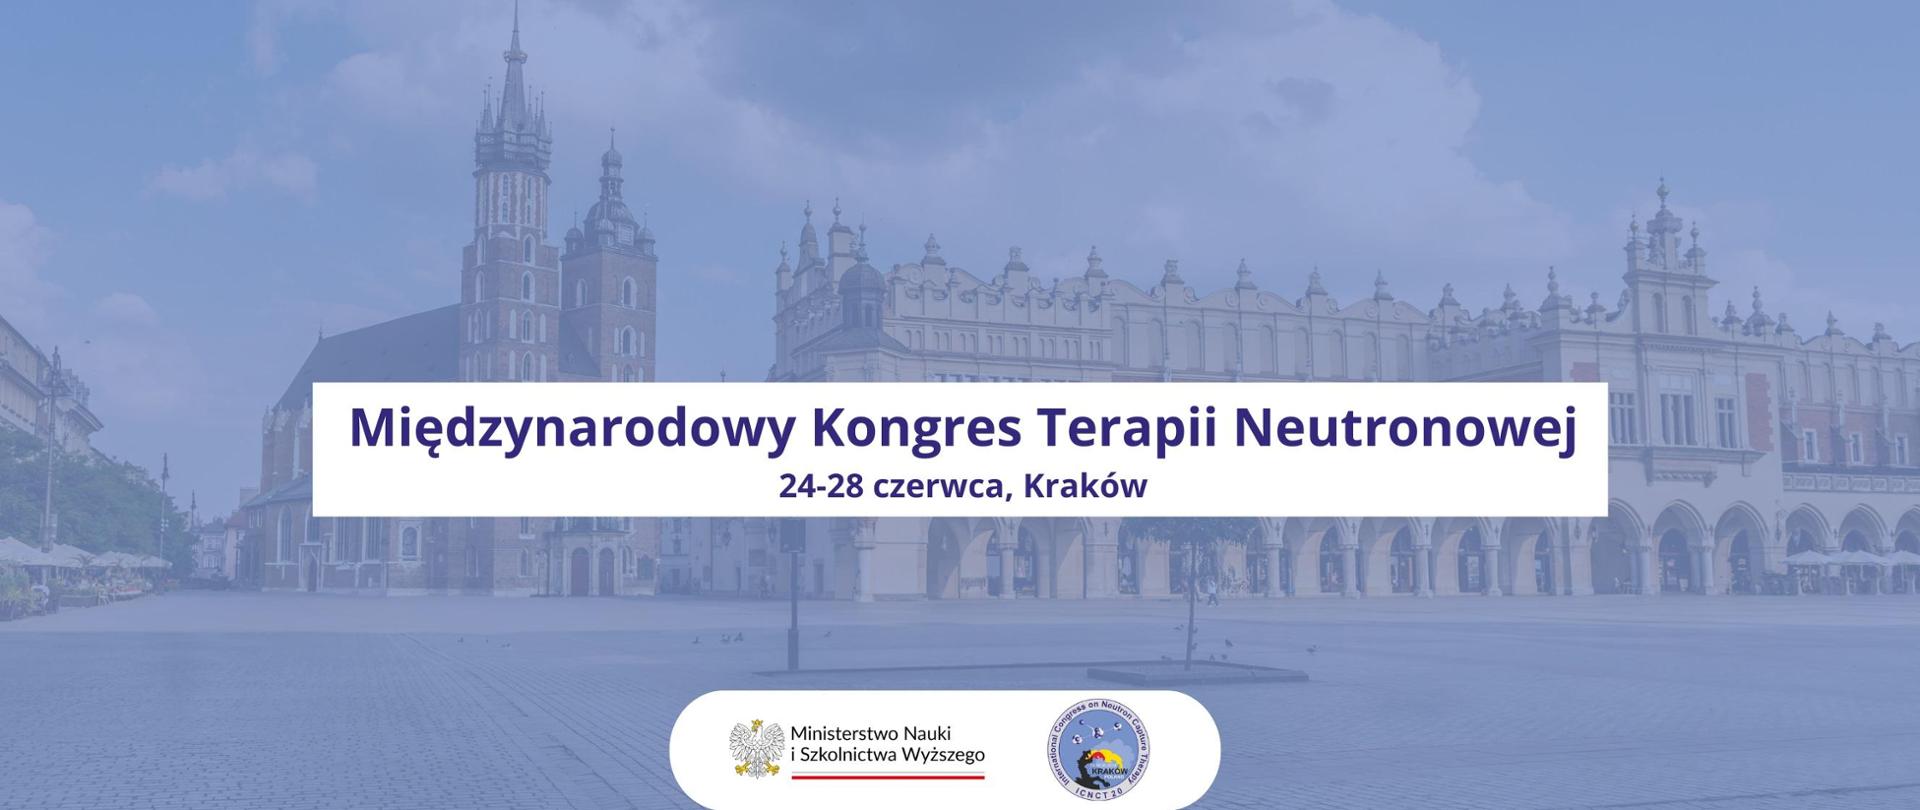 Grafika - na tle zdjęcia krakowskiego rynku napis Międzynarodowy Kongres Terapii Neutronowej - 24-28 czerwca, Kraków.